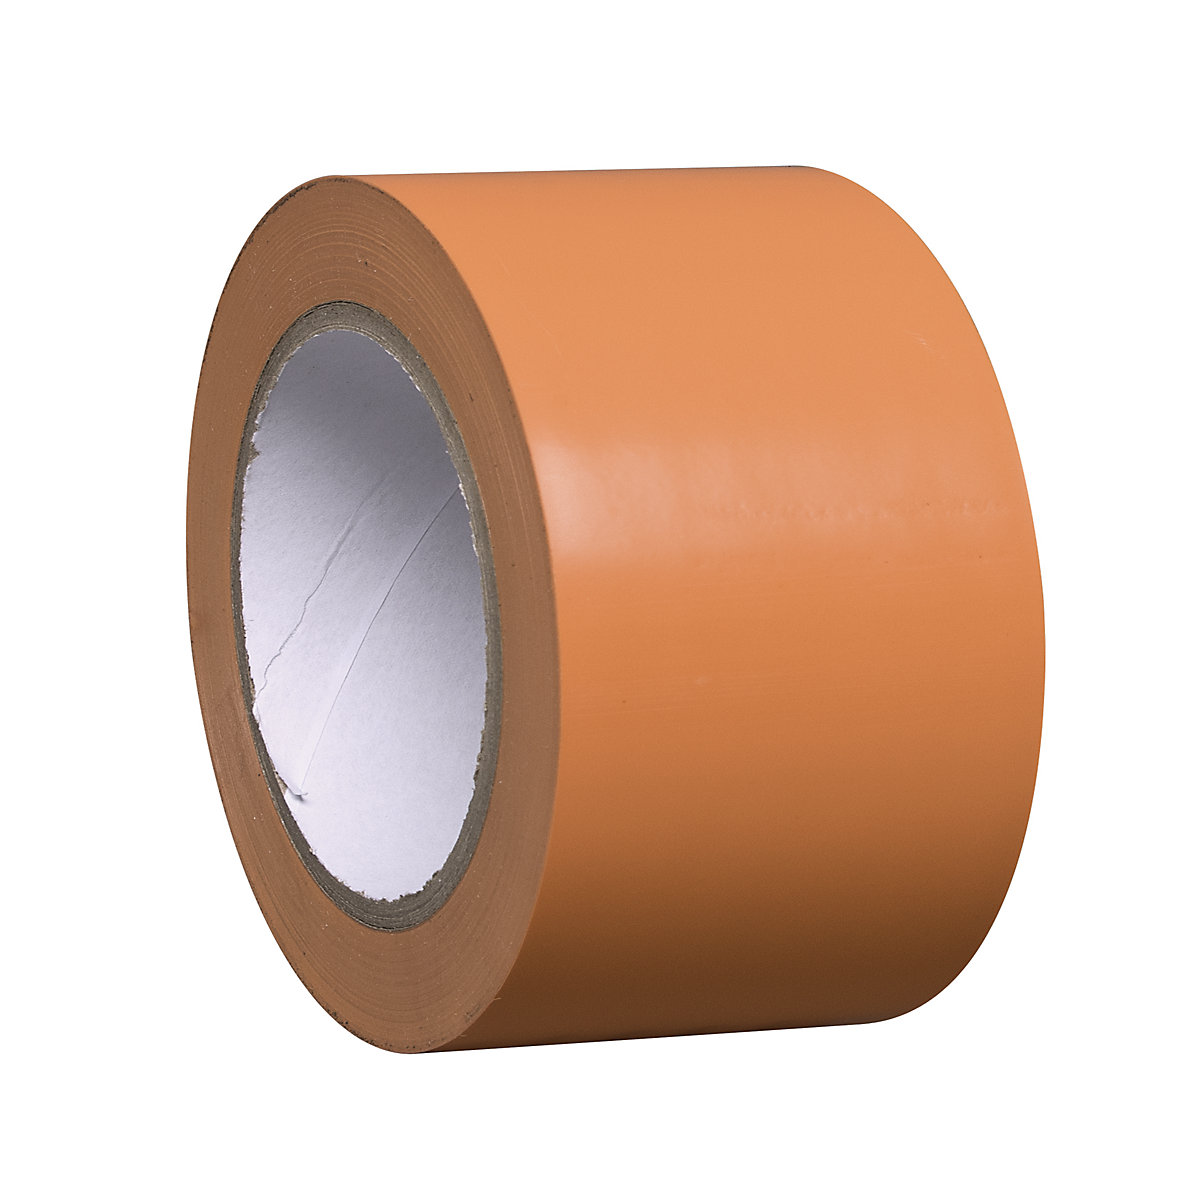 Traka za označavanje podova od vinila, jednobojna, širina 75 mm, u narančastoj boji, pak. 16 rola-2